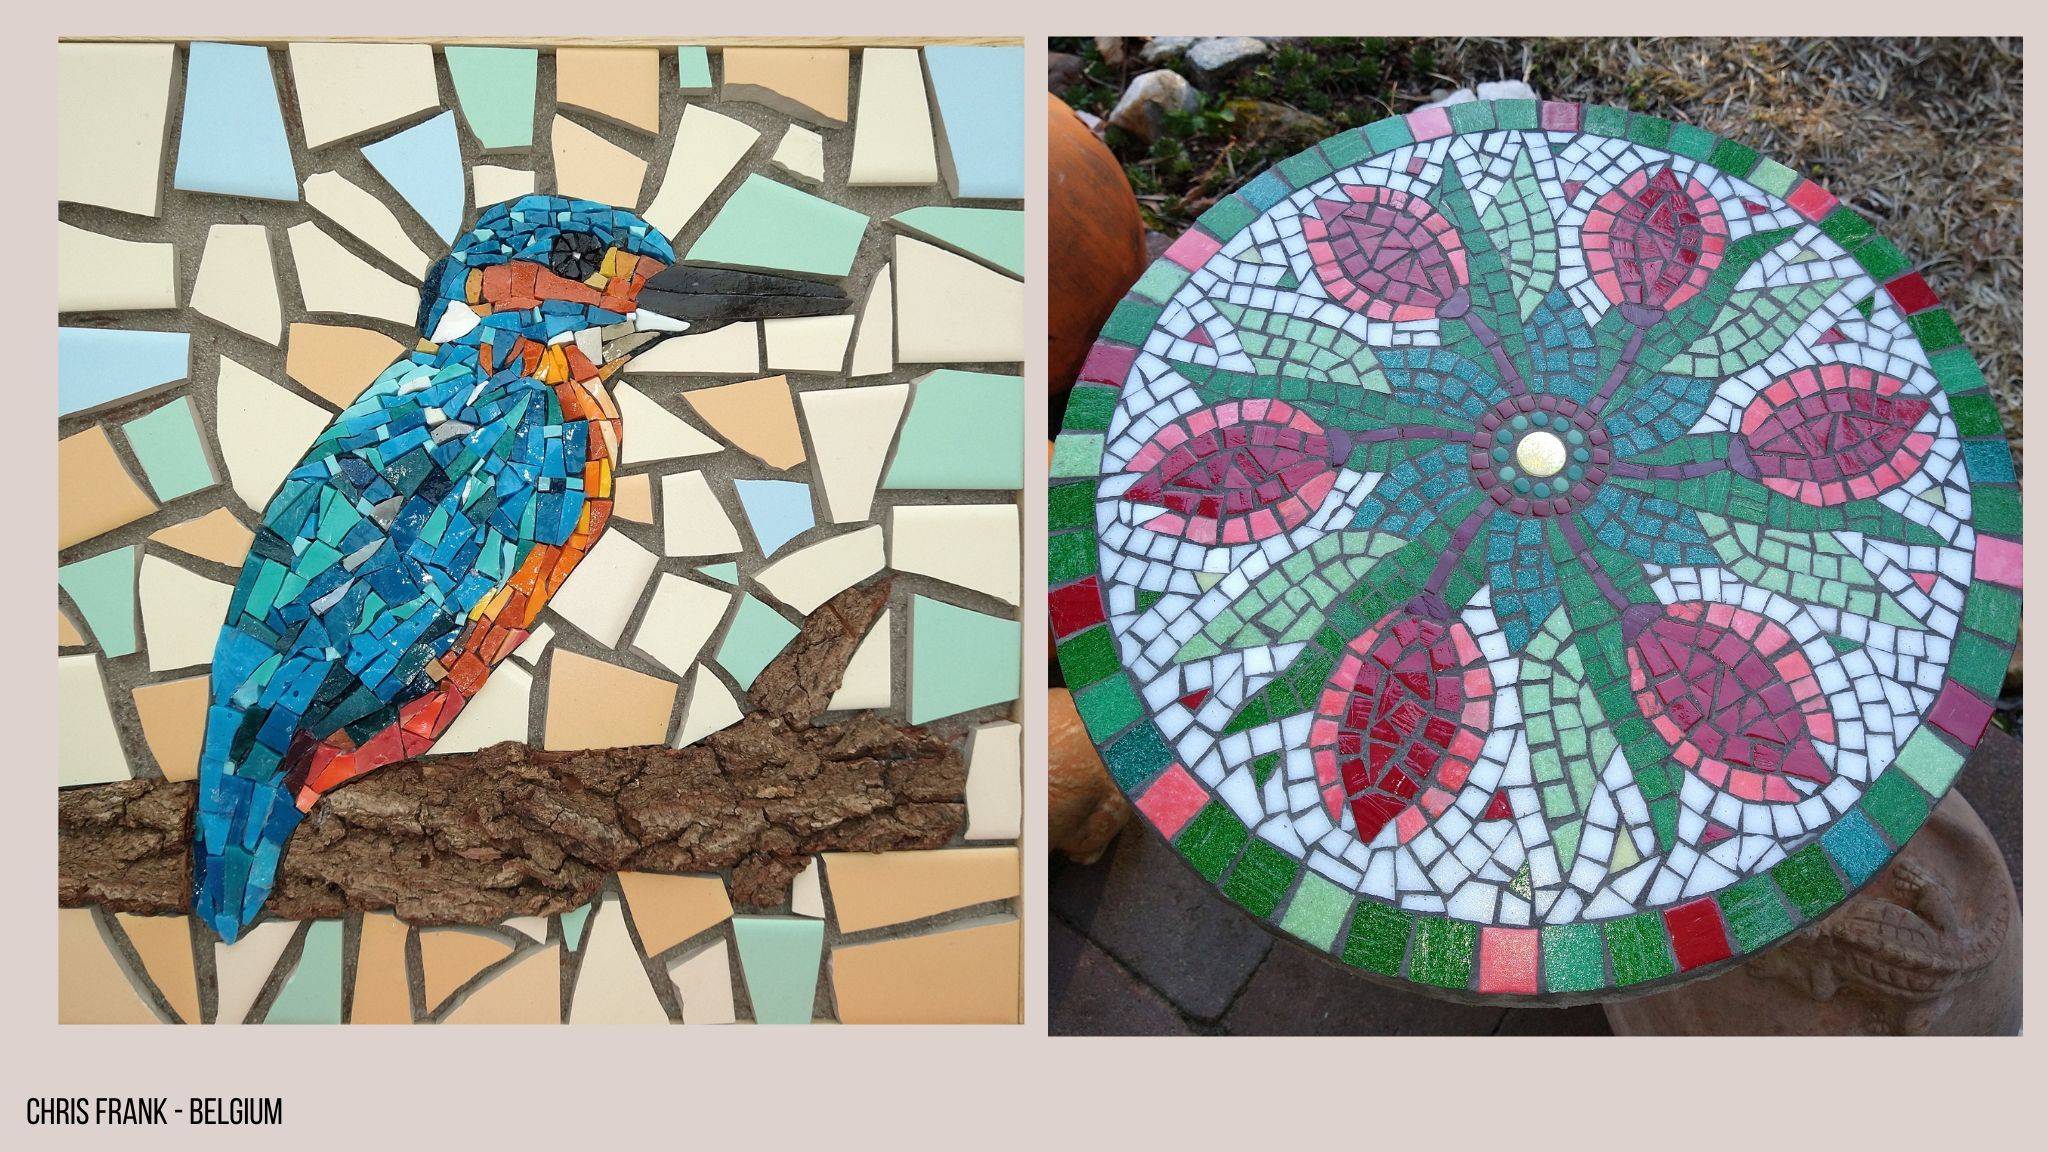 Linker foto: Een mozaiek van een blauwe ijsvogel op een tak gemaakt in Smalti met een achtergrond van Mosa tegels. Rechter foto: Een ronde tafelblad gemaakt in glasmozaiek met rode bloemenmotieven, groene bladeren en een witte achtergrond.